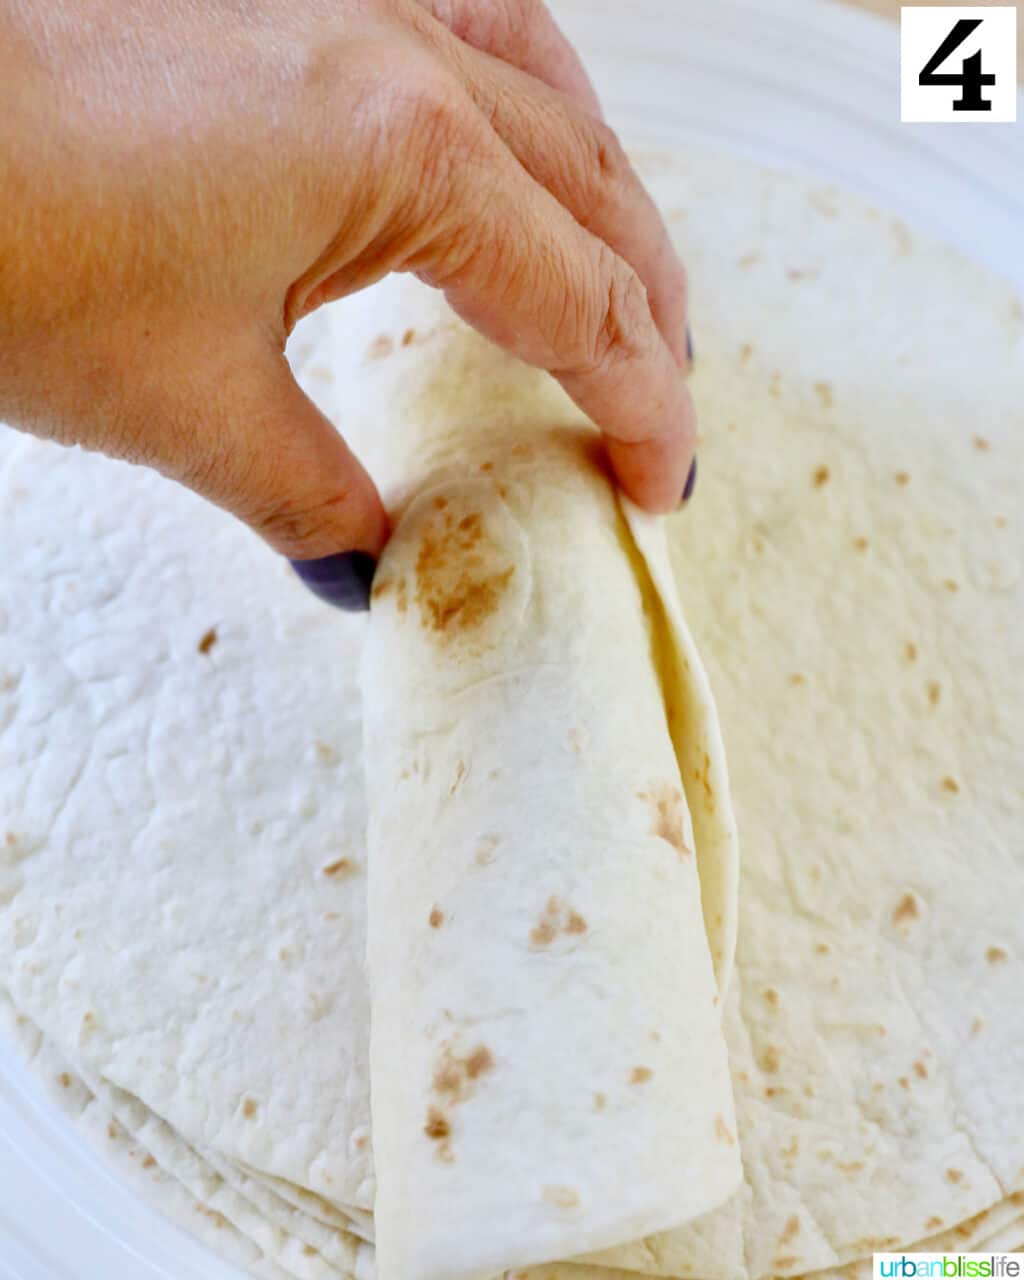 hand rolling a flour tortilla up.